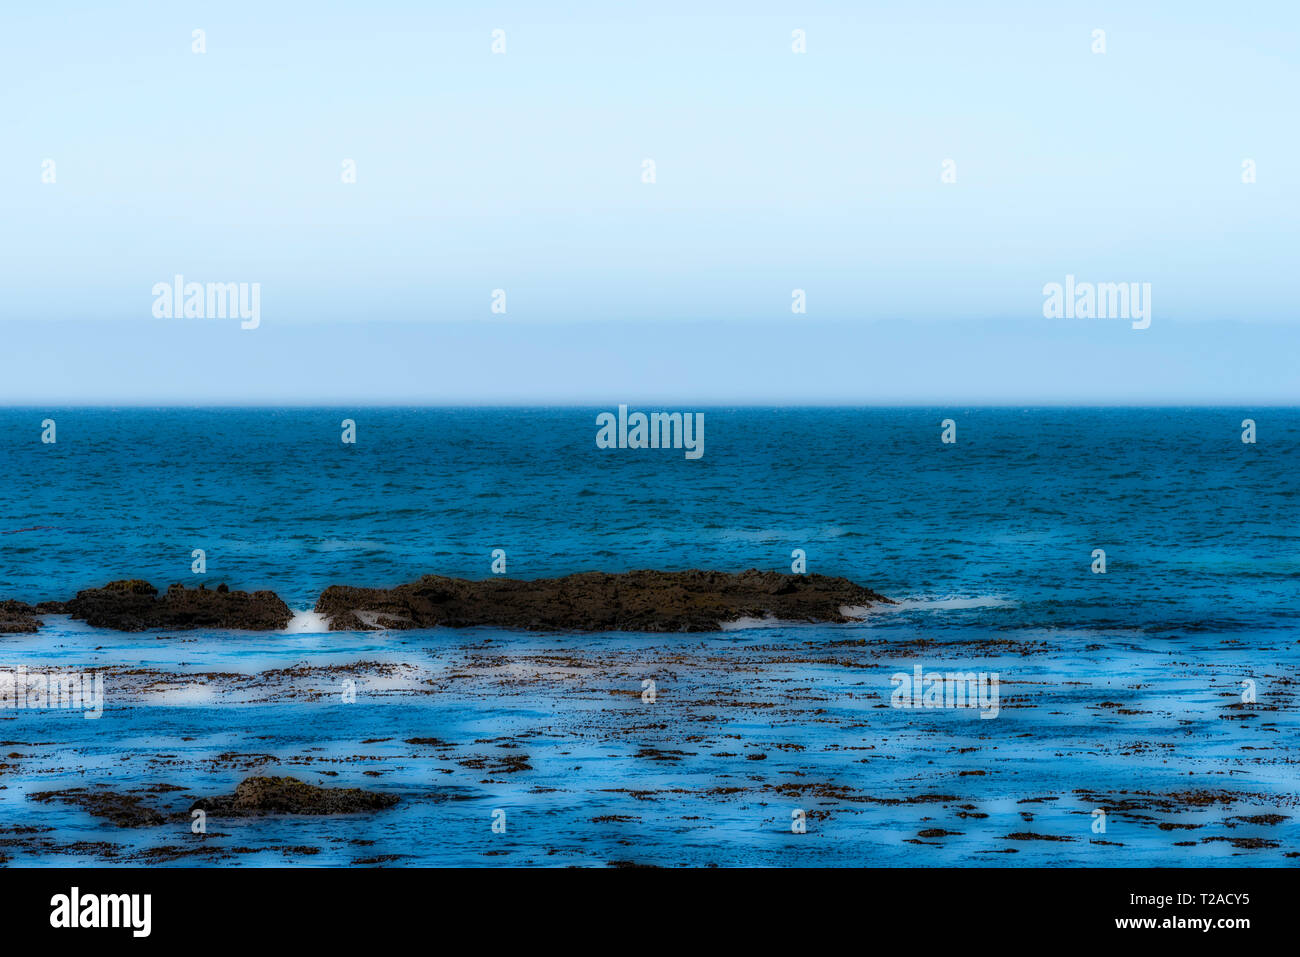 Poster style Bild der blauen Ozean mit Felsen und kleinen Wellen unter Blau grauen Himmel. Stockfoto